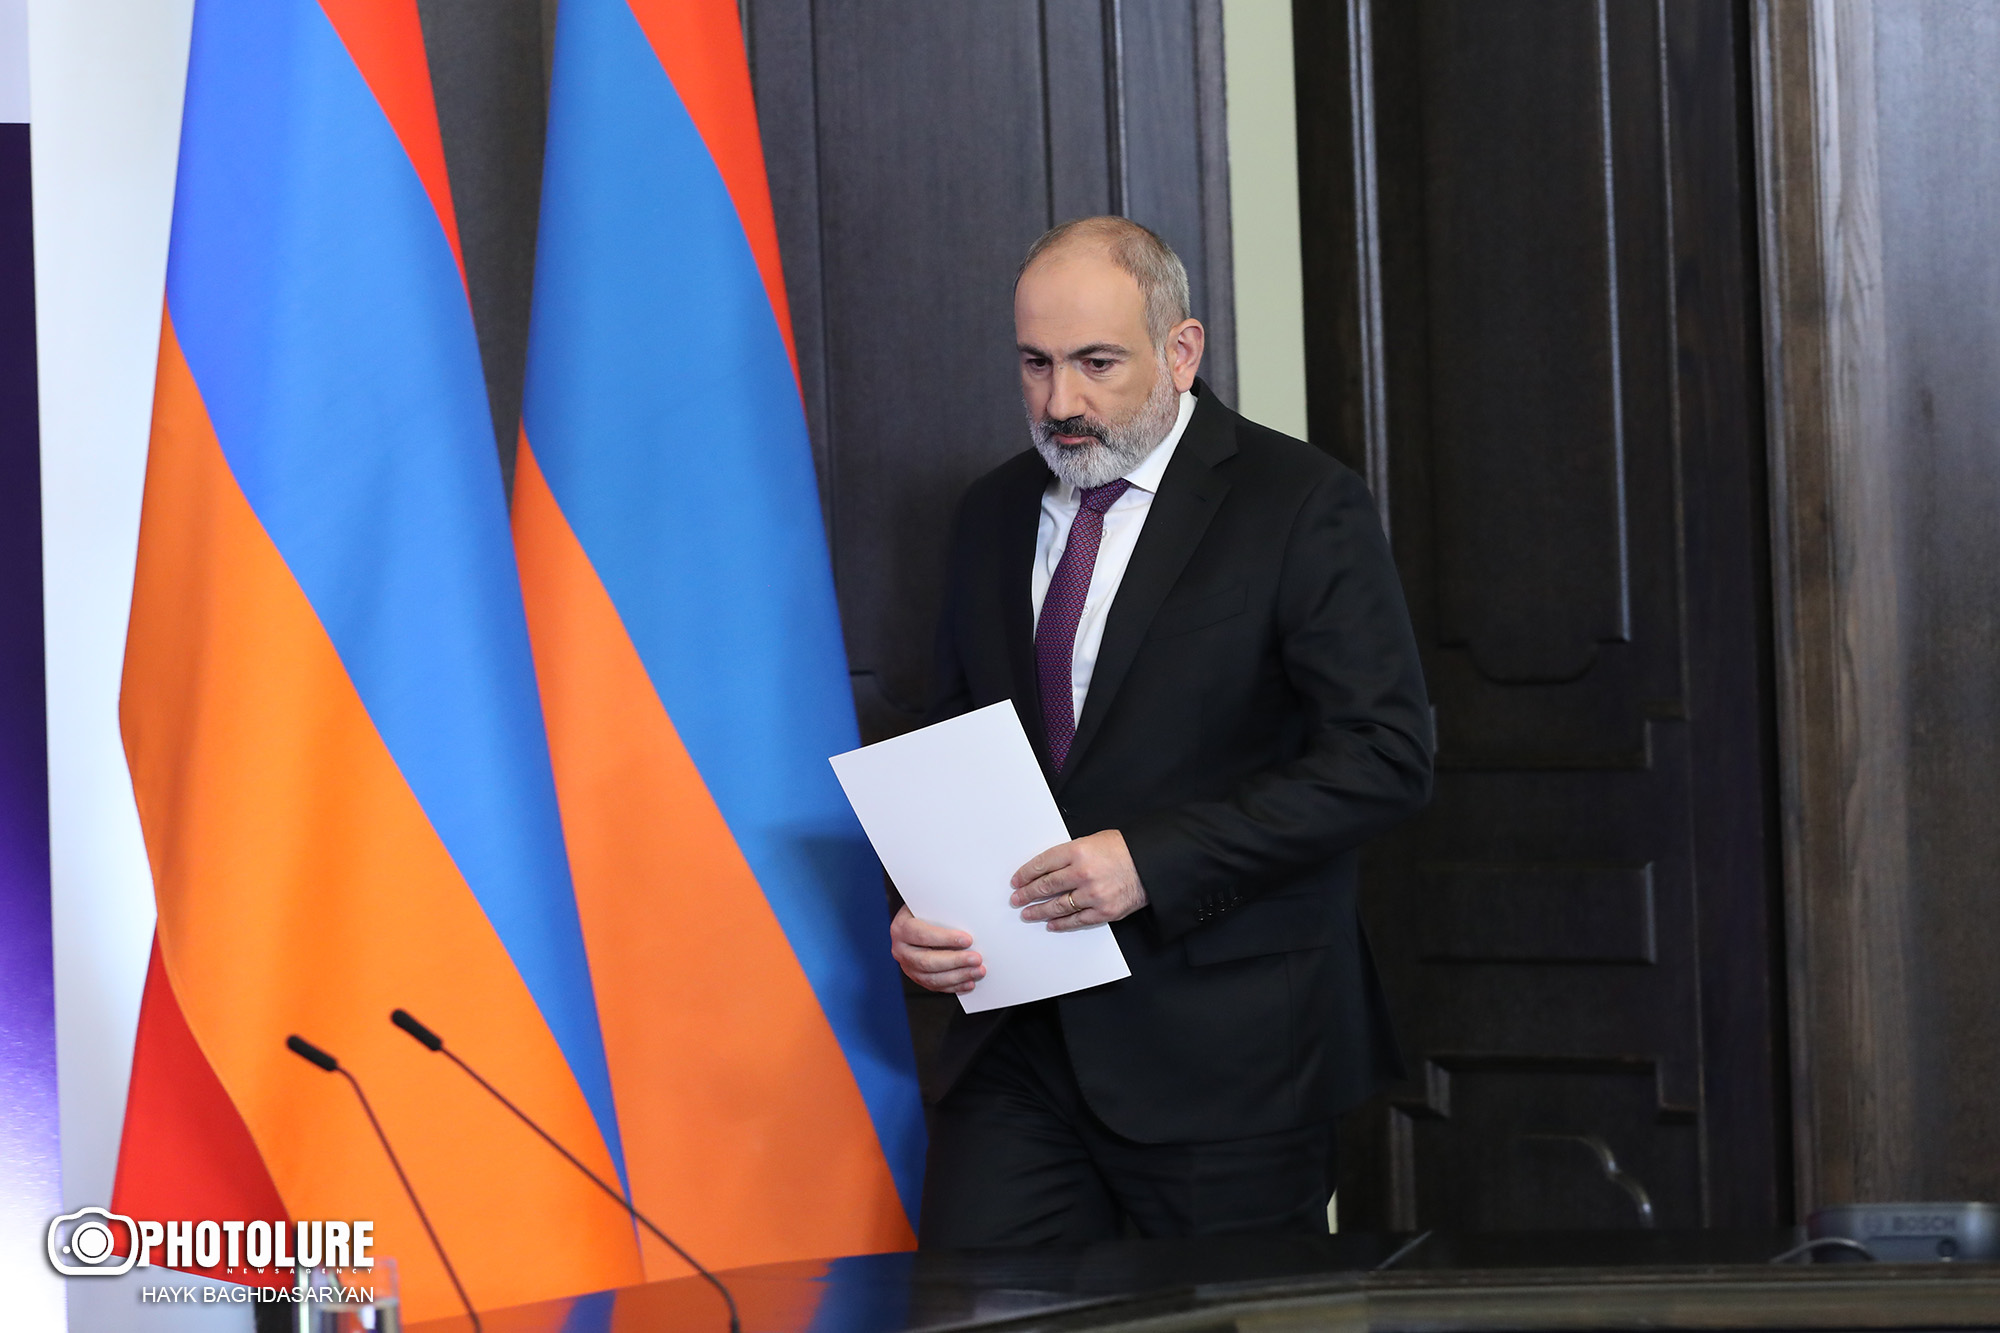 Pashinyan says Armenia ready to recognize Nagorno-Karabakh as part of Azerbaijan